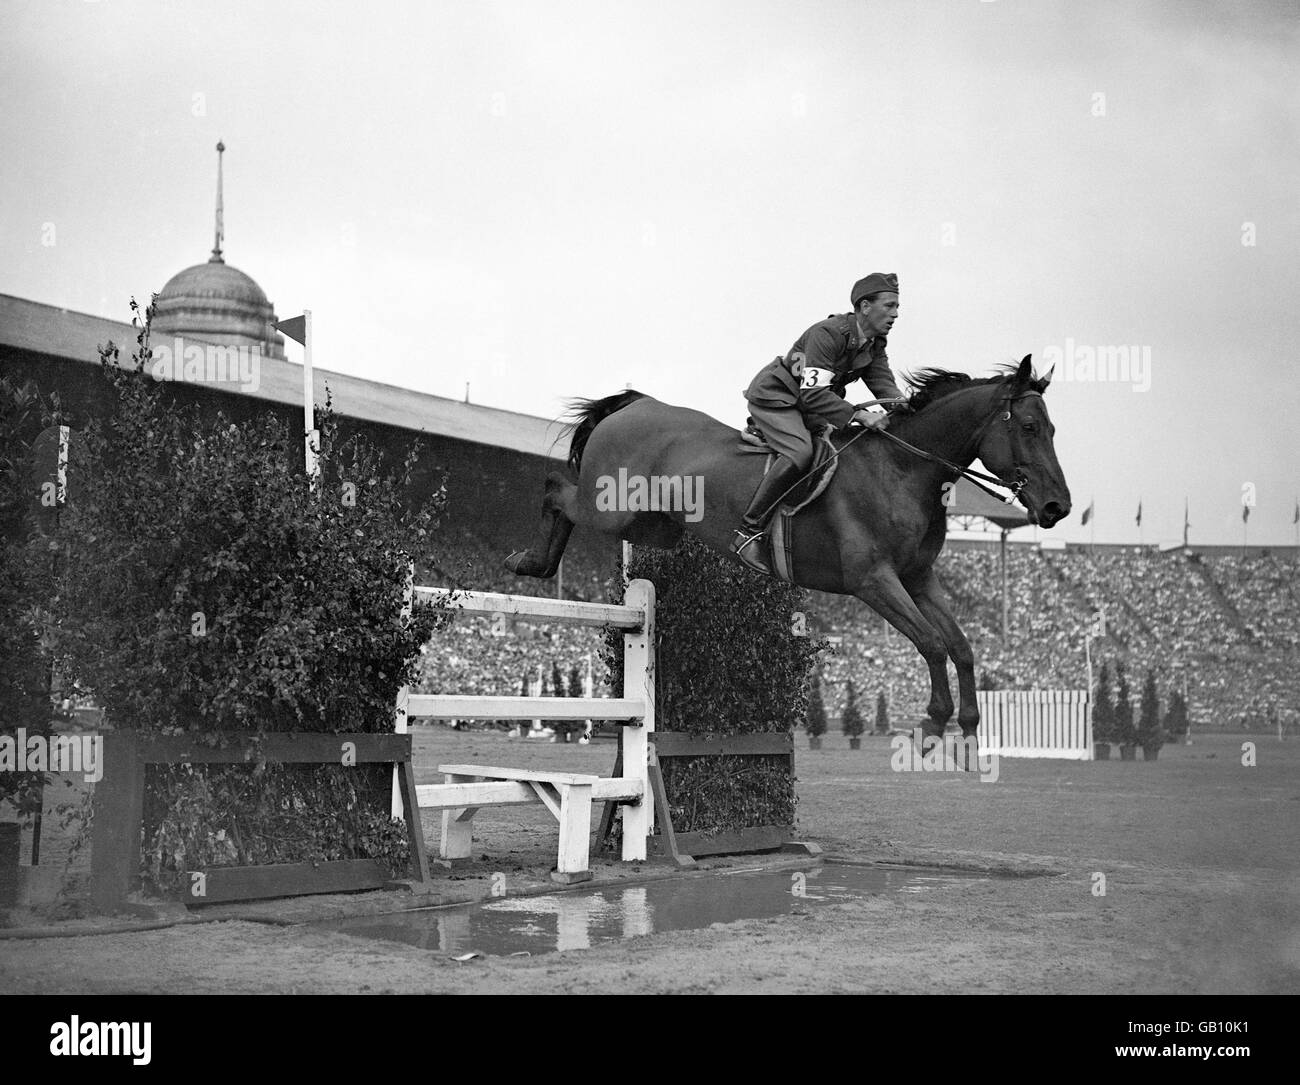 Juegos Olímpicos de Londres 1948 - Equitación - Empire - Wembley Stadium Foto de stock